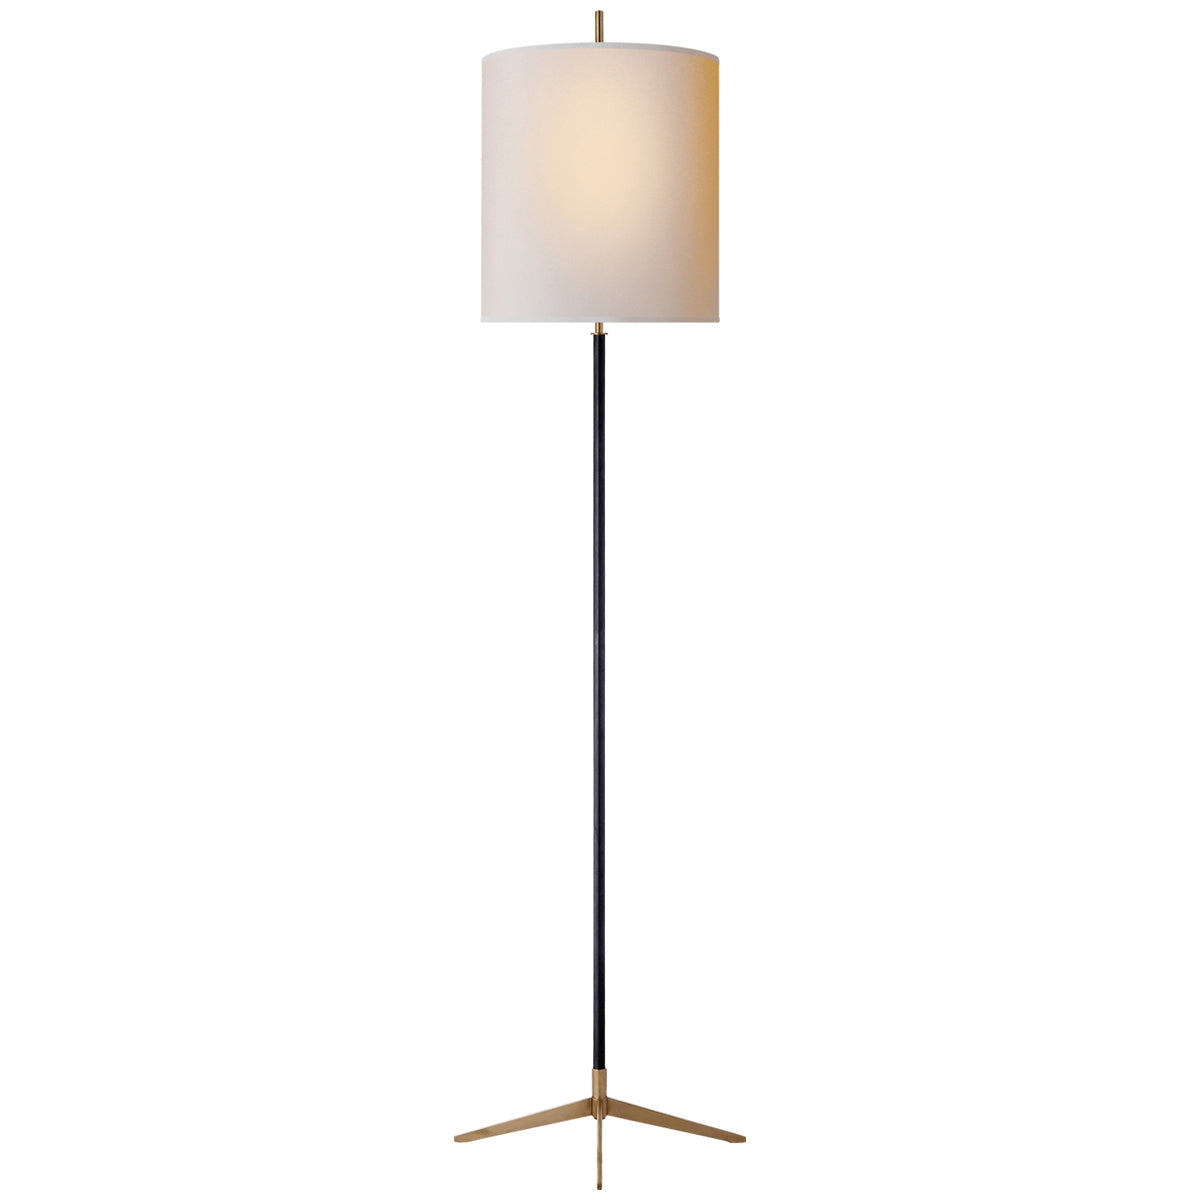 Thomas O'Brien Visual Comfort Parish Floor Lamp. Original Price